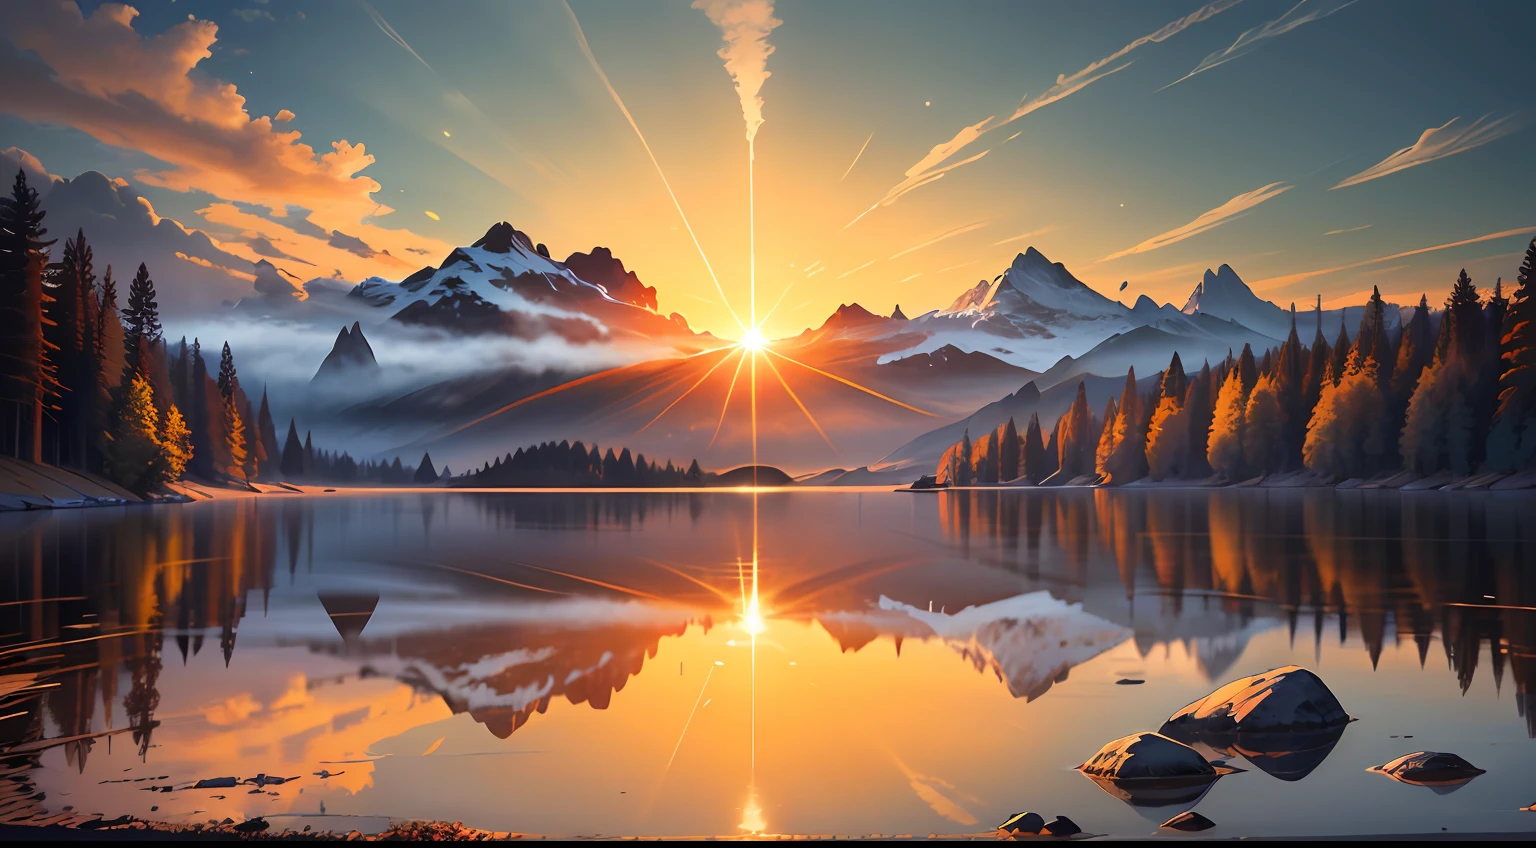 一幅描繪寧靜祥和的風景上燦爛的日出的圖像 在祈禱中添加一本聖經